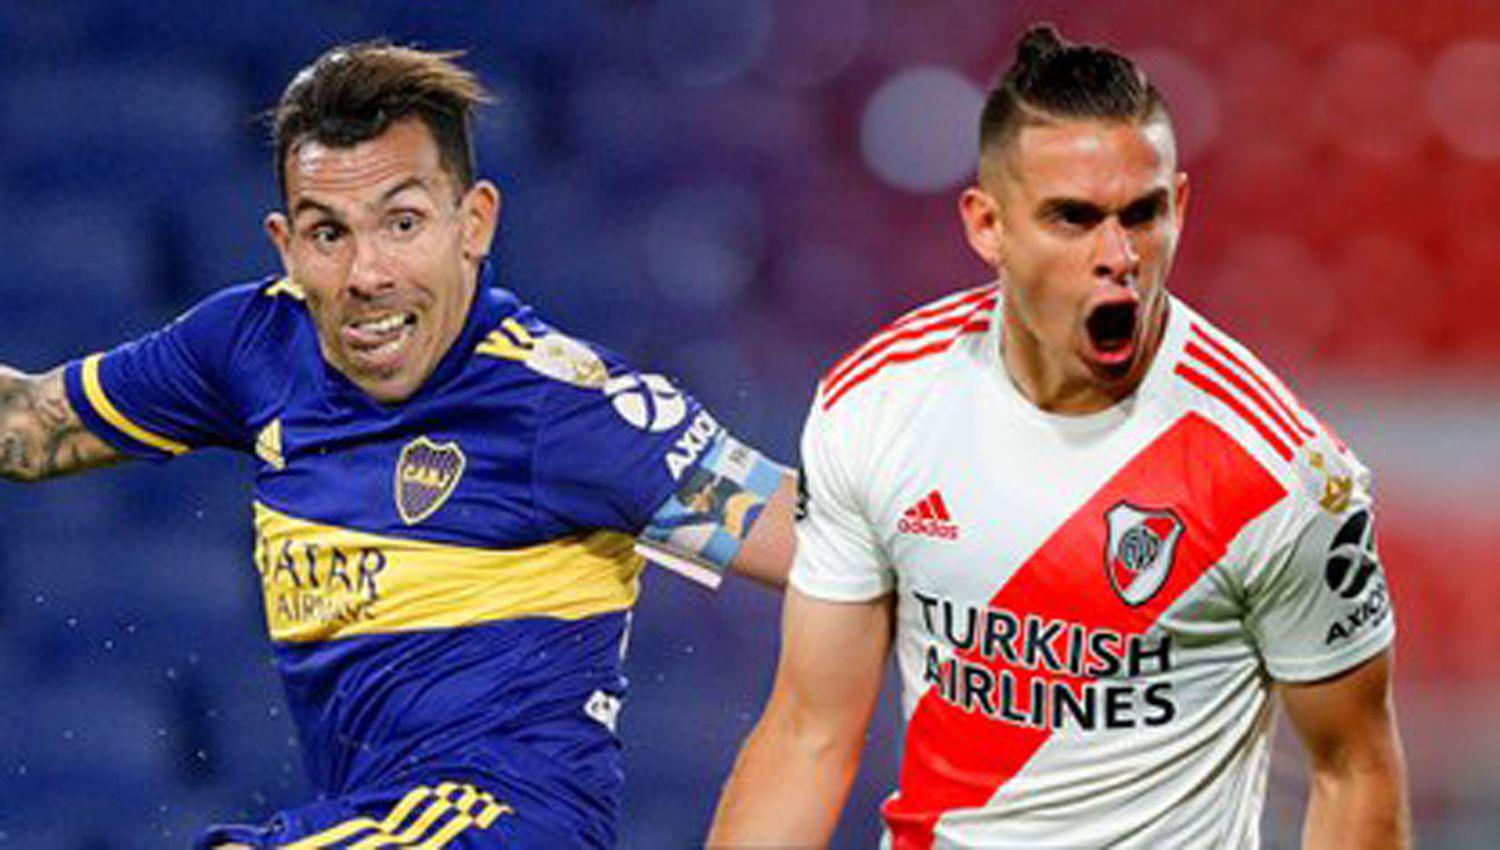 Confirman a los aacuterbitros para los partidos revancha de las semifinales de la Copa Libertadores y Sudamericana